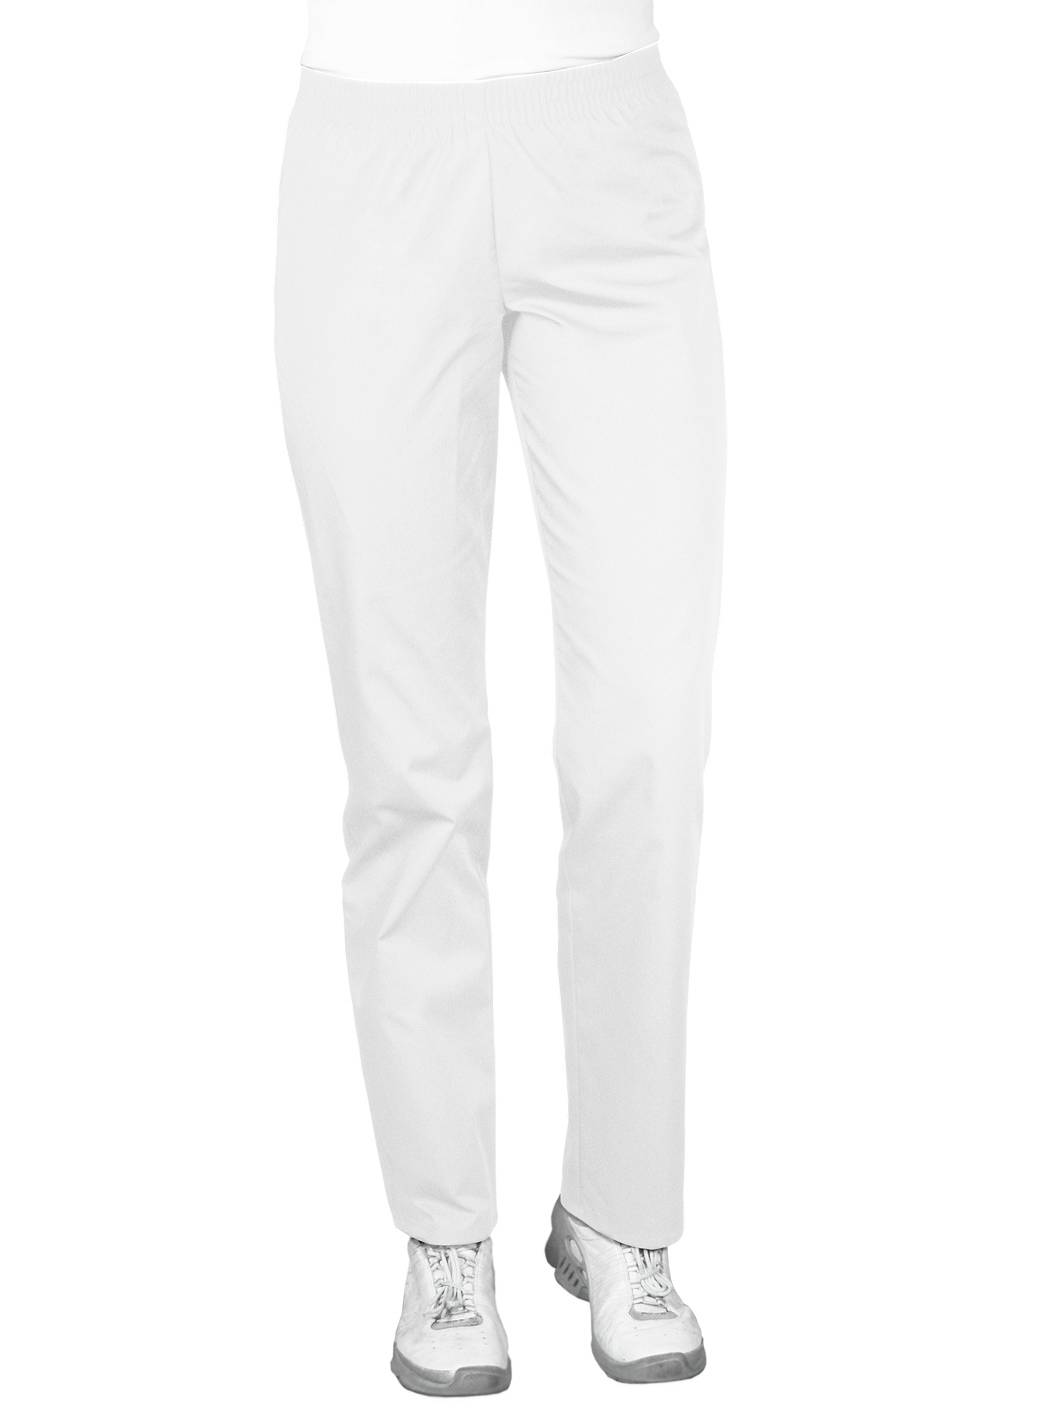 Spodnie medyczne białe, z elastycznym pasem (SC4-B)